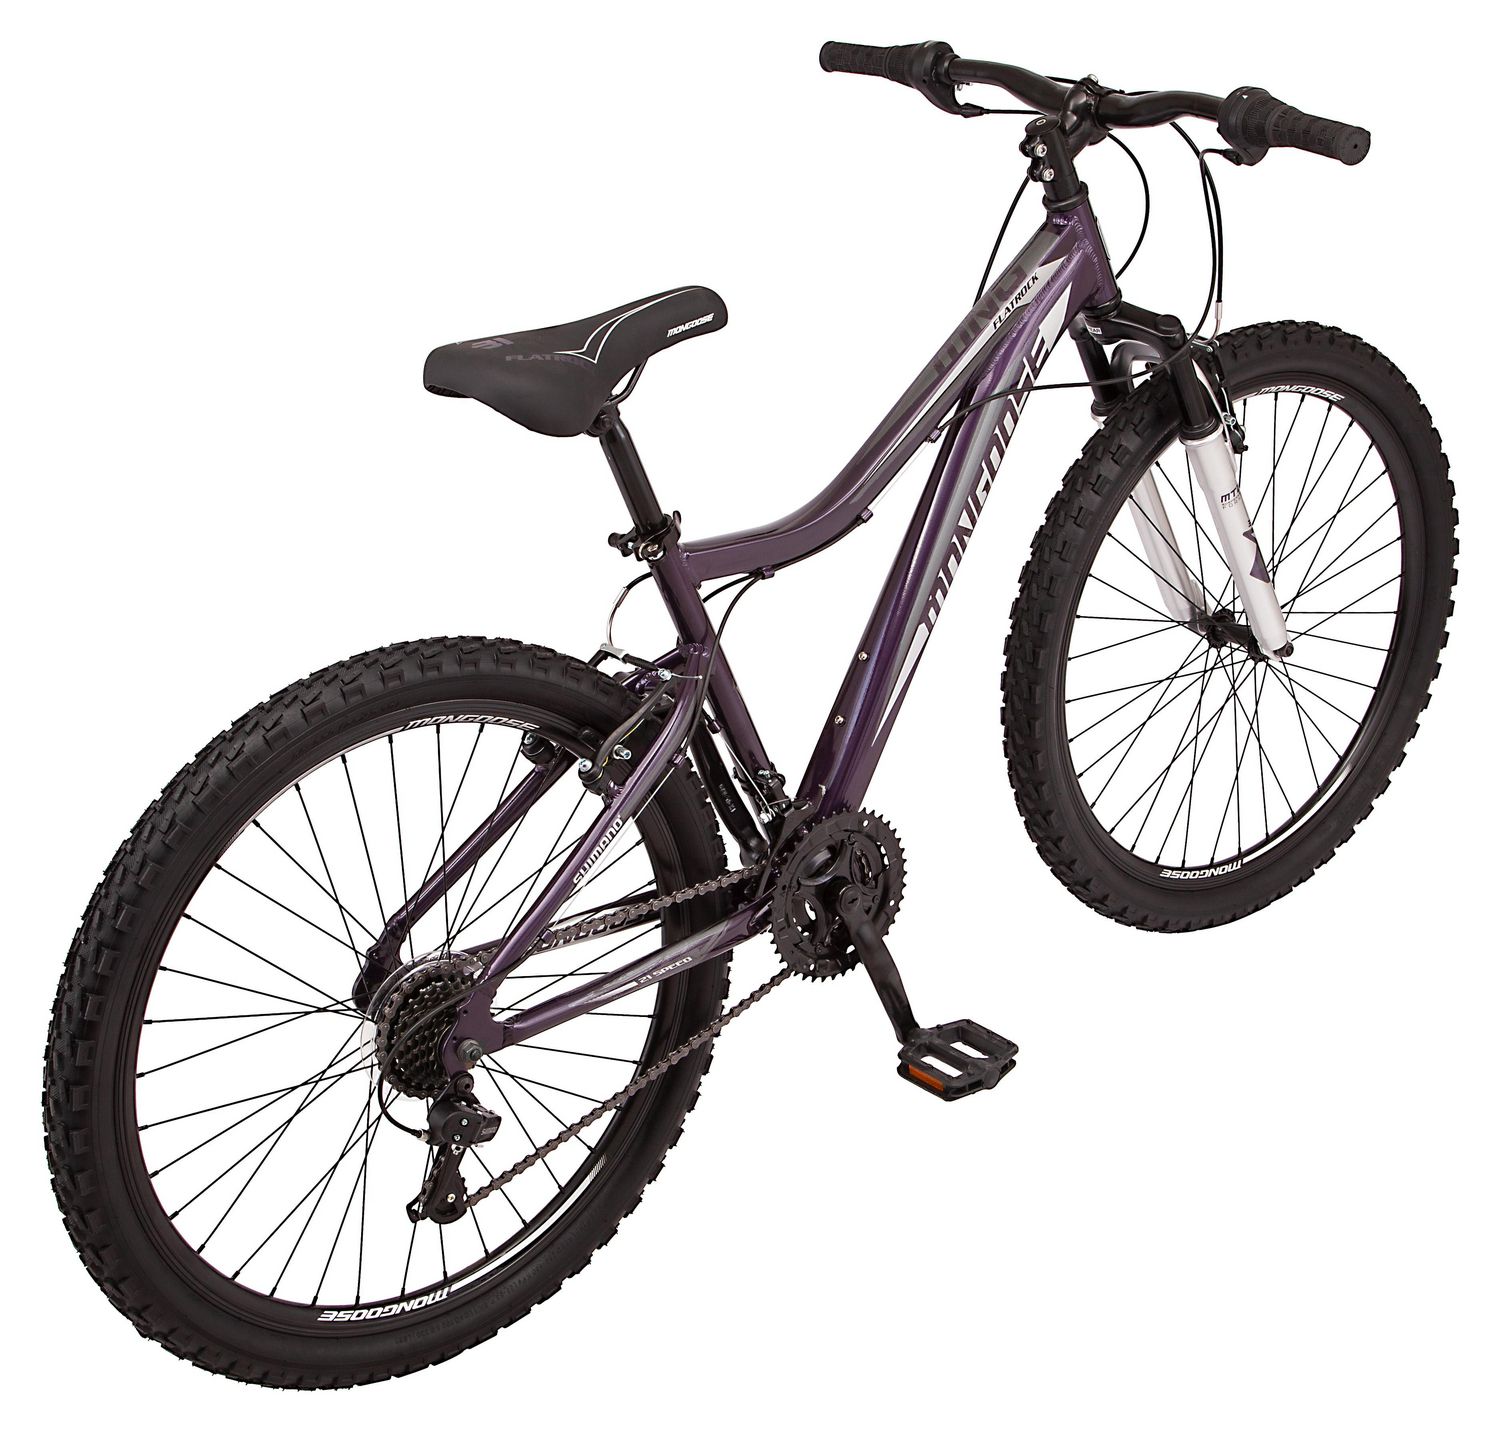 Mongoose Flatrock mountain bike, 21 speeds, 26-inch wheels 